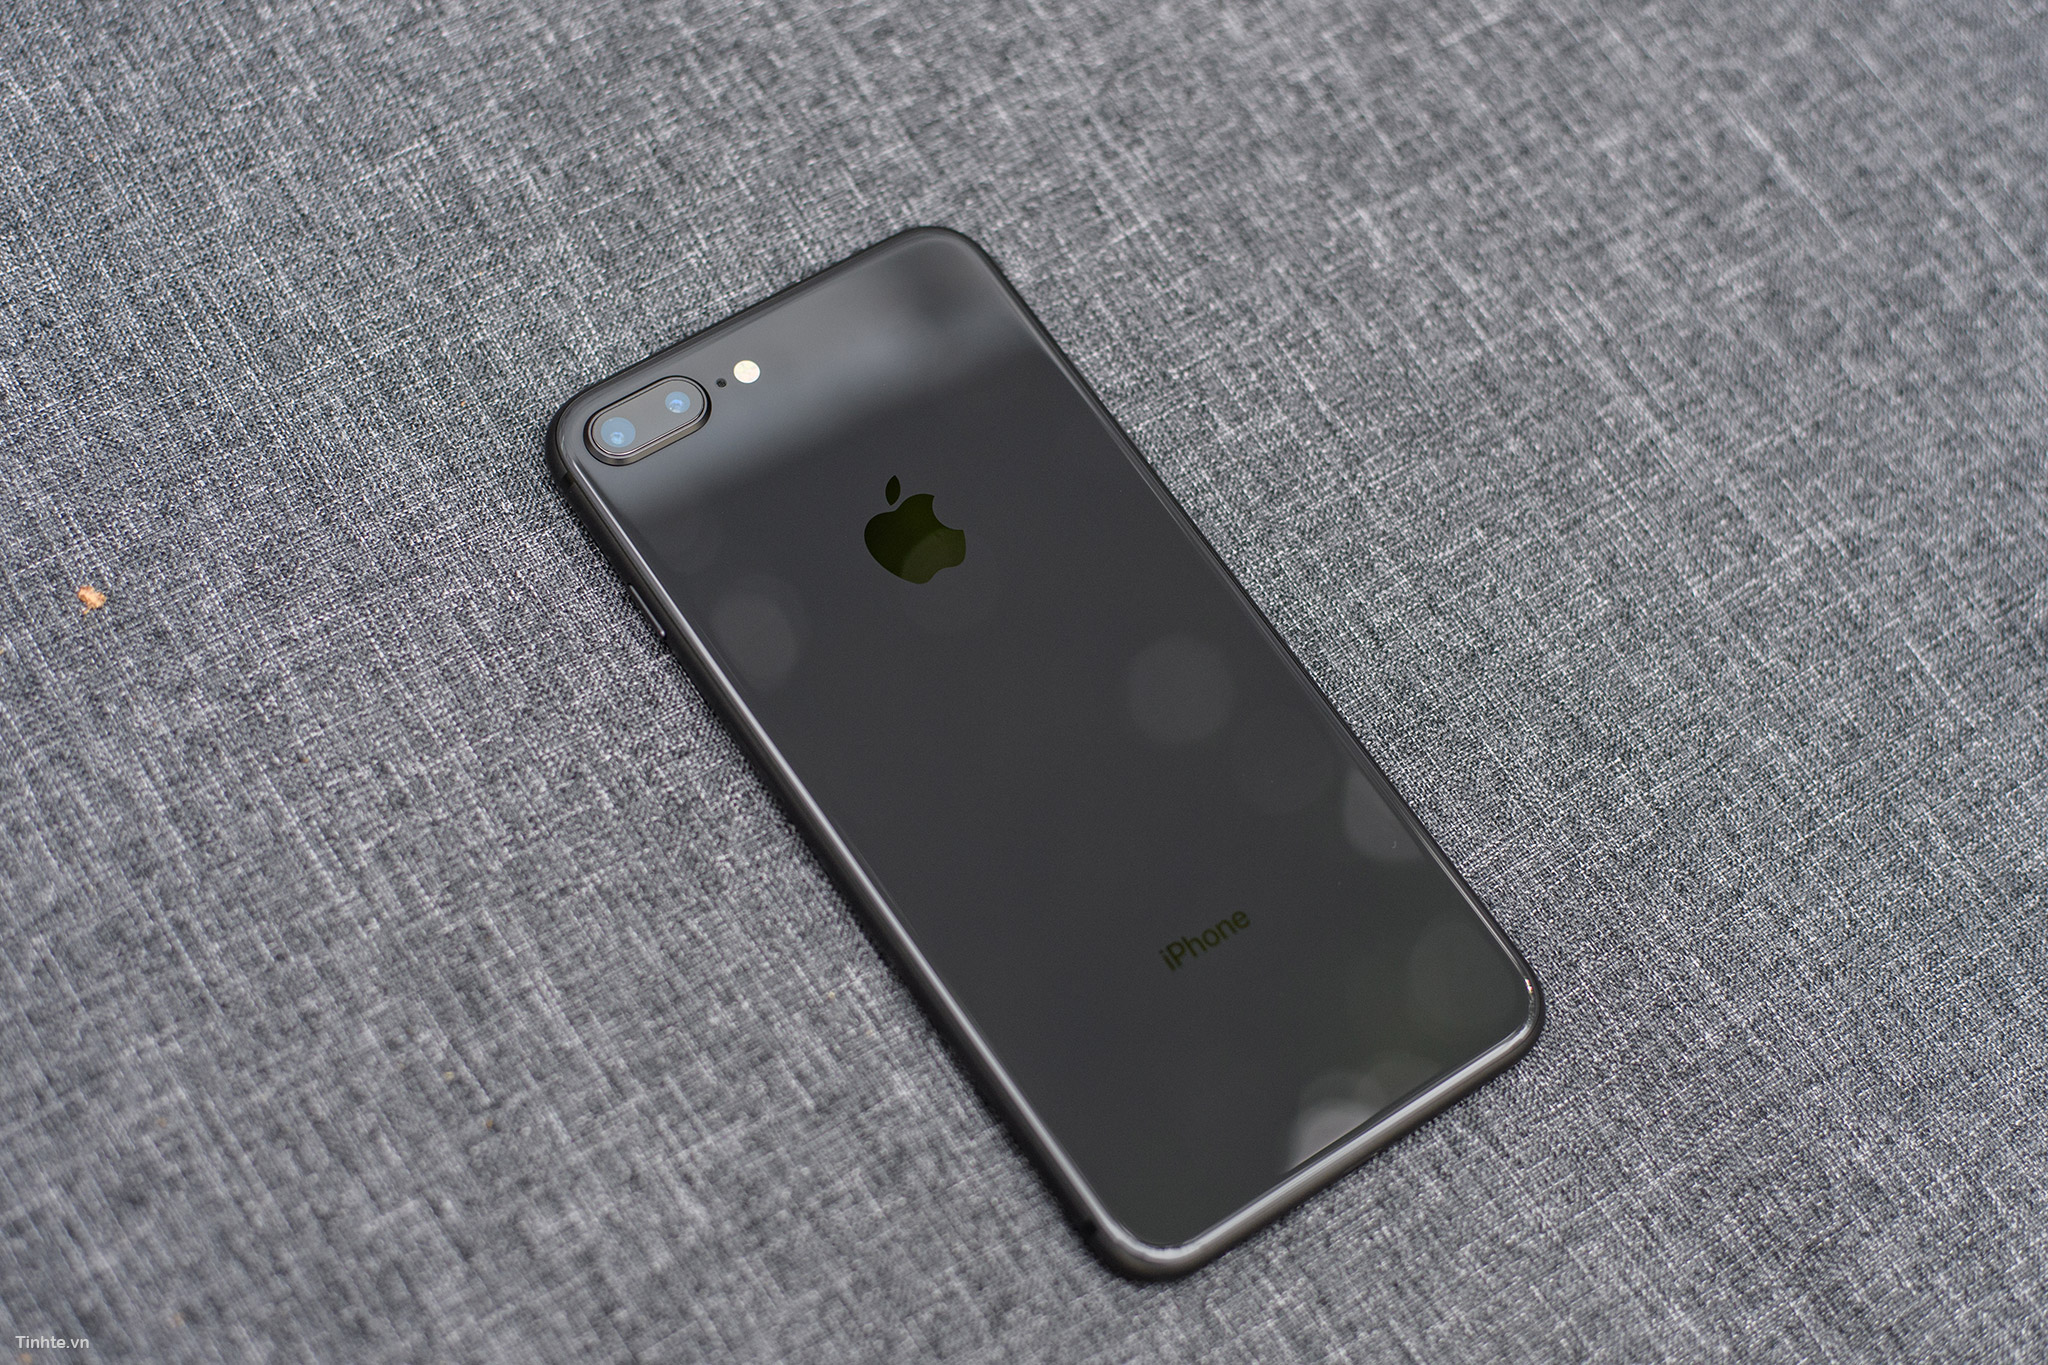 Space Gray: Sự pha trộn hoàn hảo giữa màu đen sang trọng với nét xám hiện đại chính là cái gì làm nên sự độc đáo của màu sắc Space Gray của Apple. Khi bạn sở hữu một chiếc iPhone trong màu sắc này, đảm bảo bạn sẽ thể hiện phong cách thời thượng nhất. Hãy xem ảnh và khám phá màu sắc Space Gray của điện thoại bạn nhé!